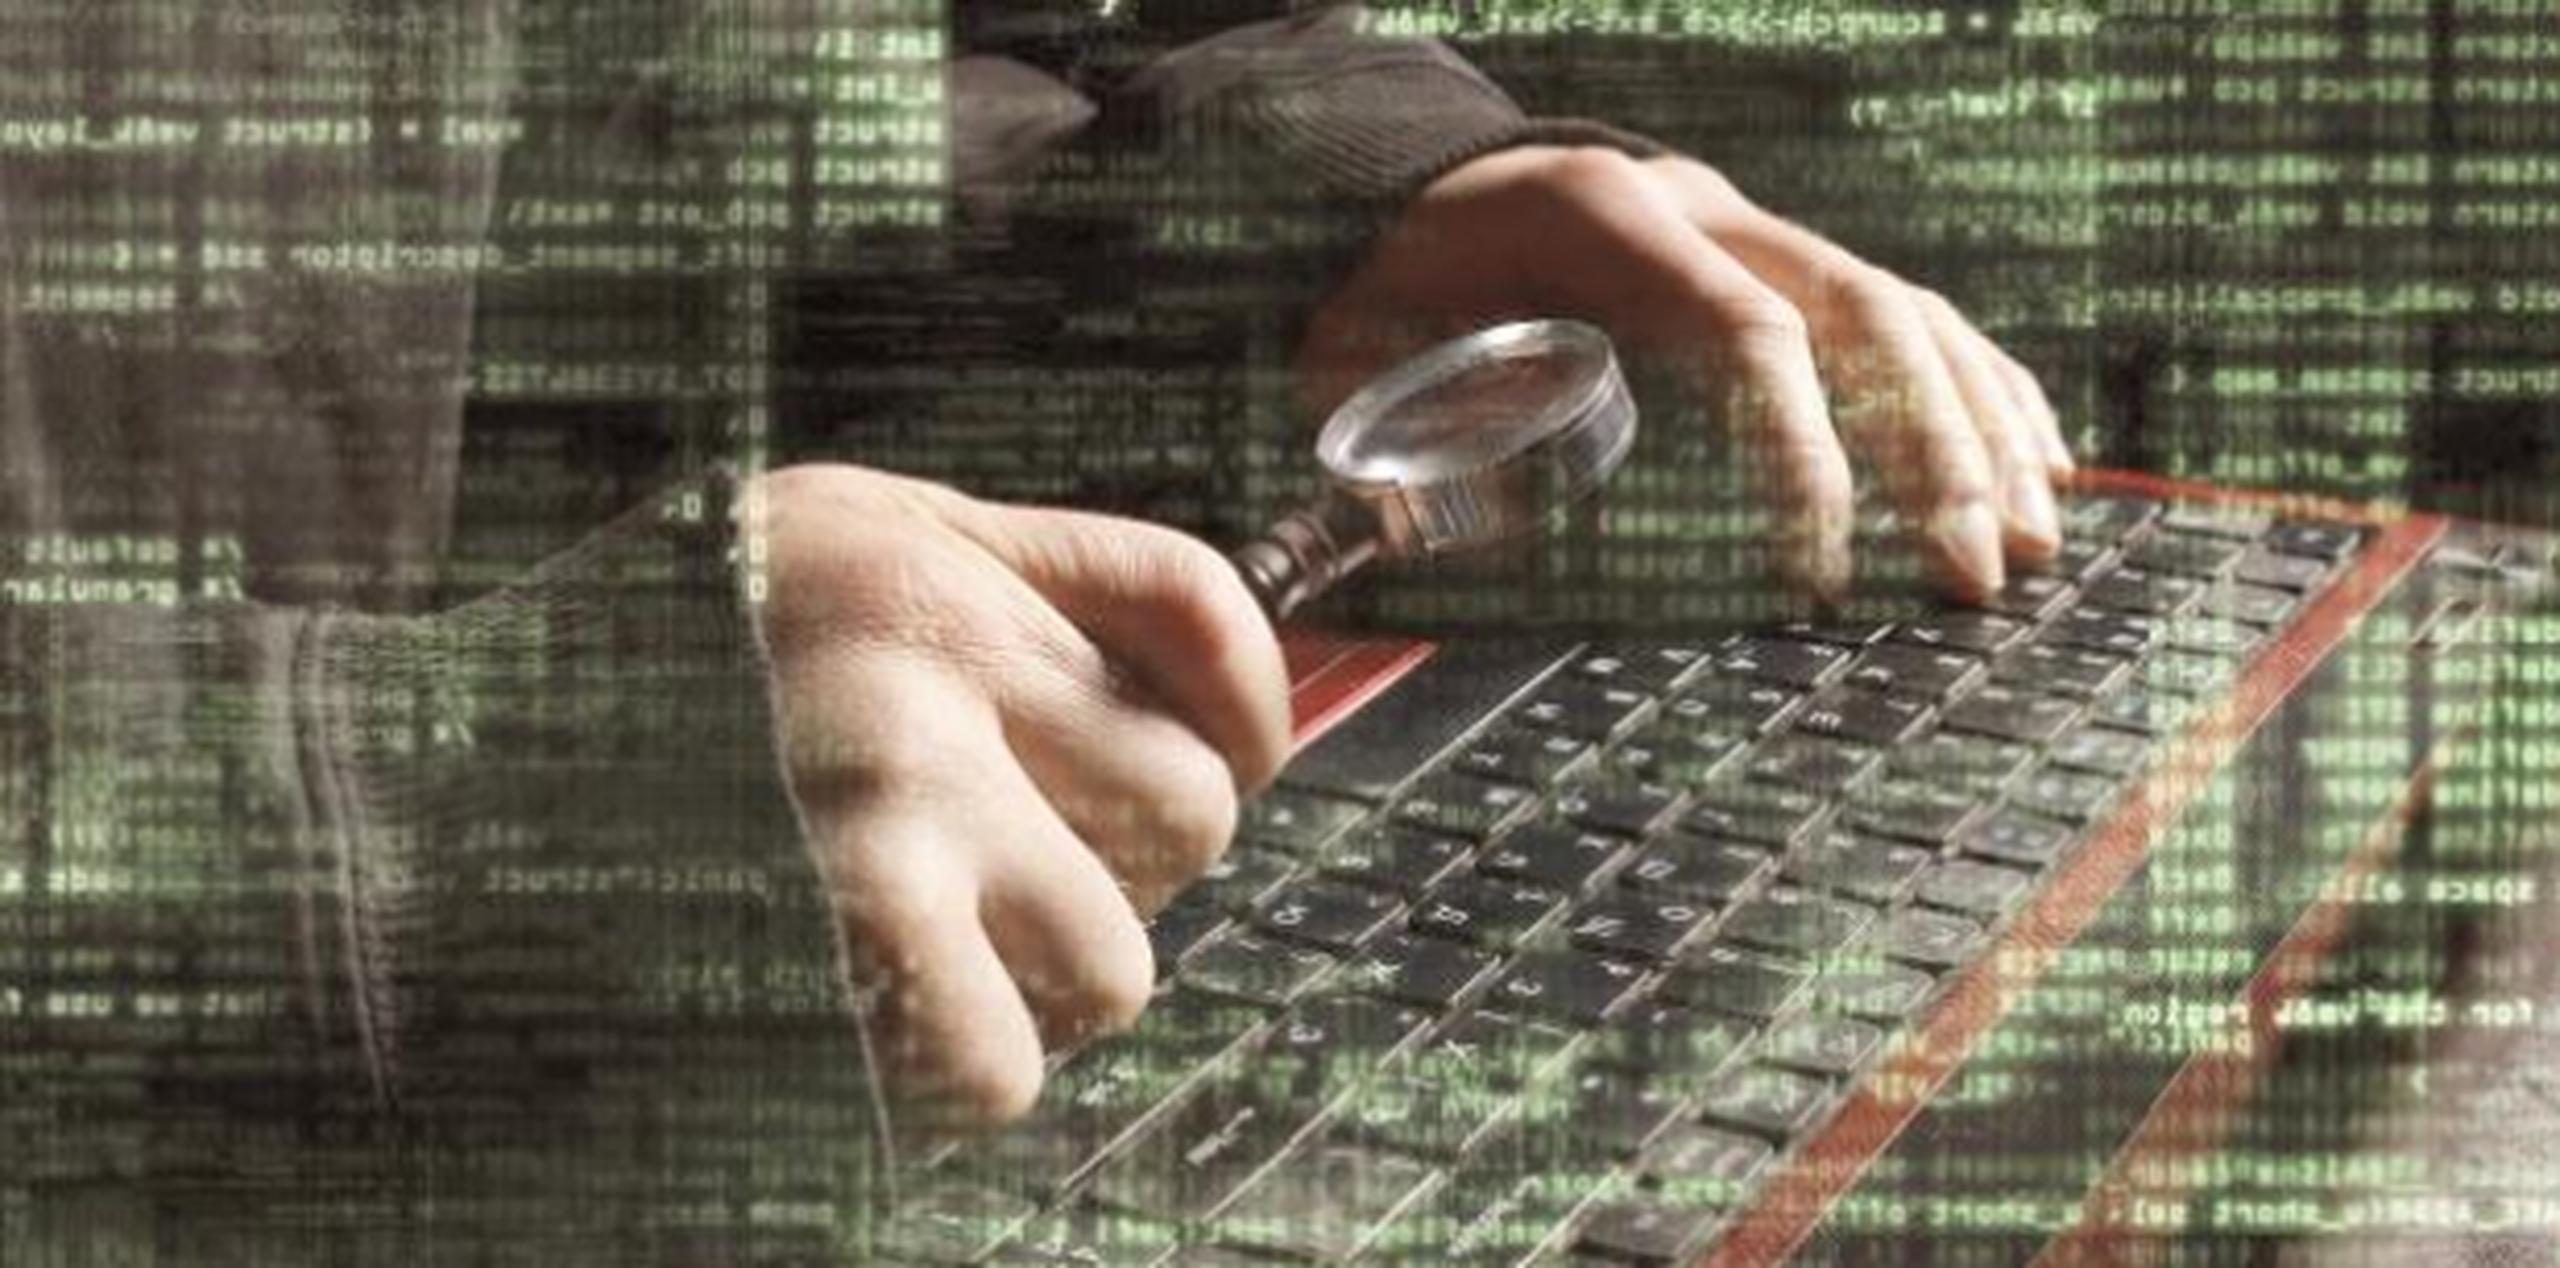 El ciberataque global del viernes ha sido considerado como el ataque con "ransomware" más grande de su tipo hasta el momento. (Archivo)